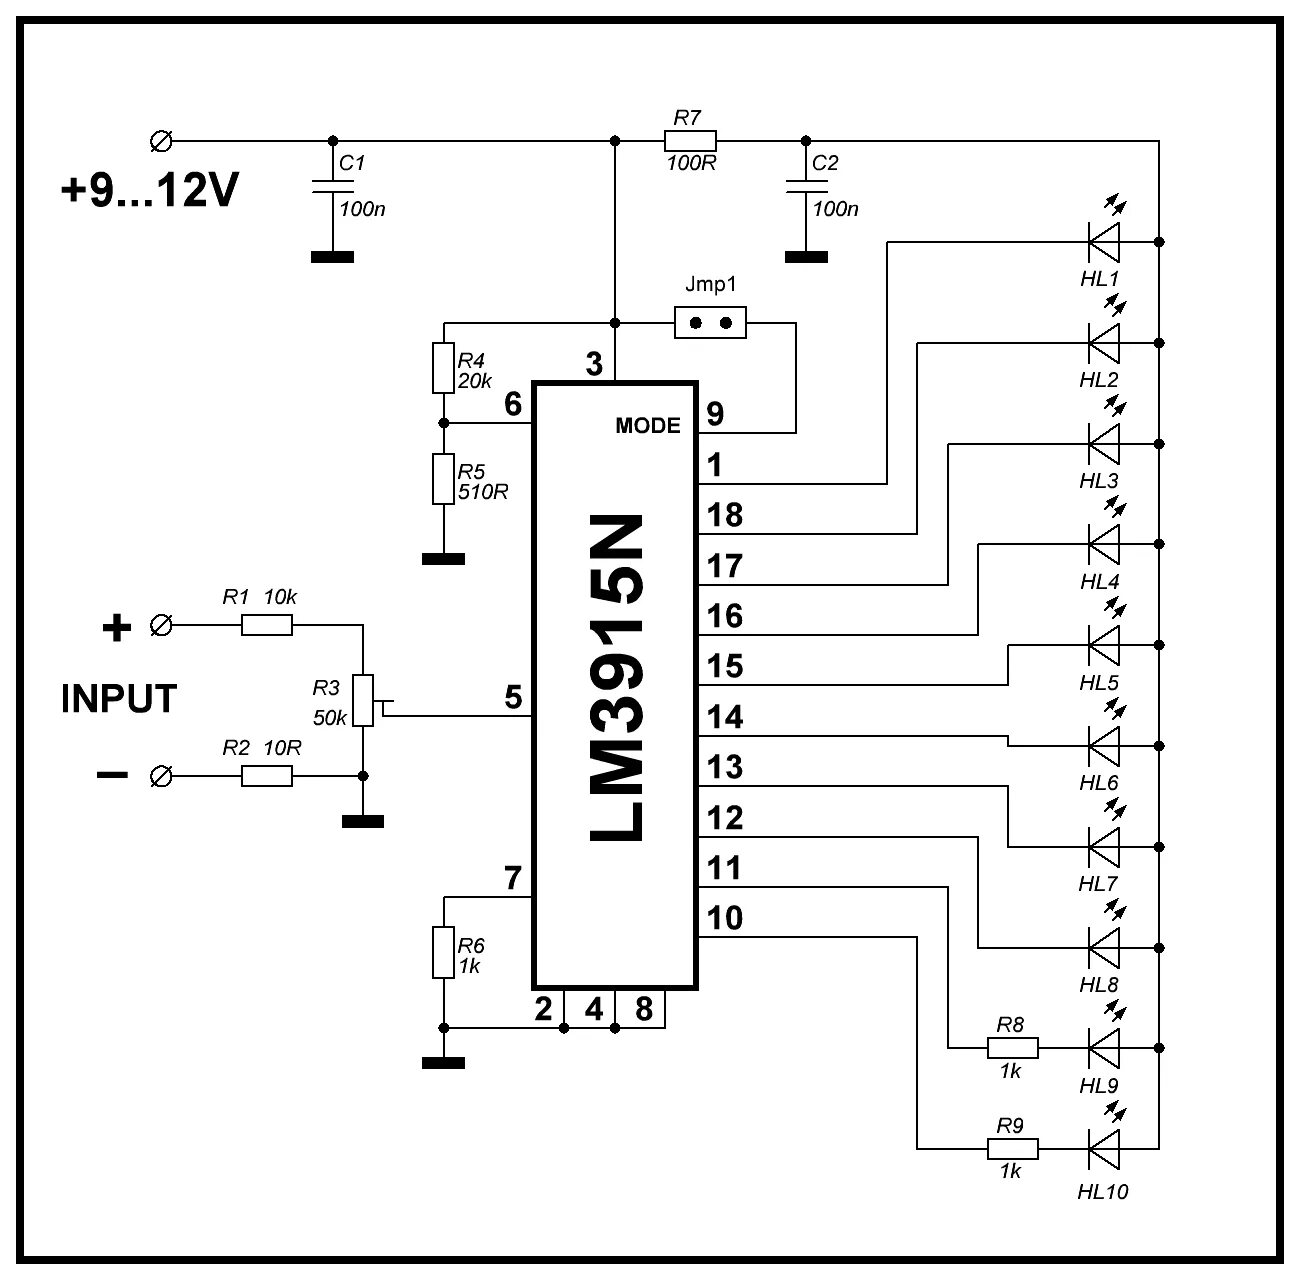 Lm3915 индикатор уровня сигнала схема. Lm3915 схема включения. Индикатор уровня на lm3915 схема. Светодиодный индикатор уровня сигнала на lm3915 схема.